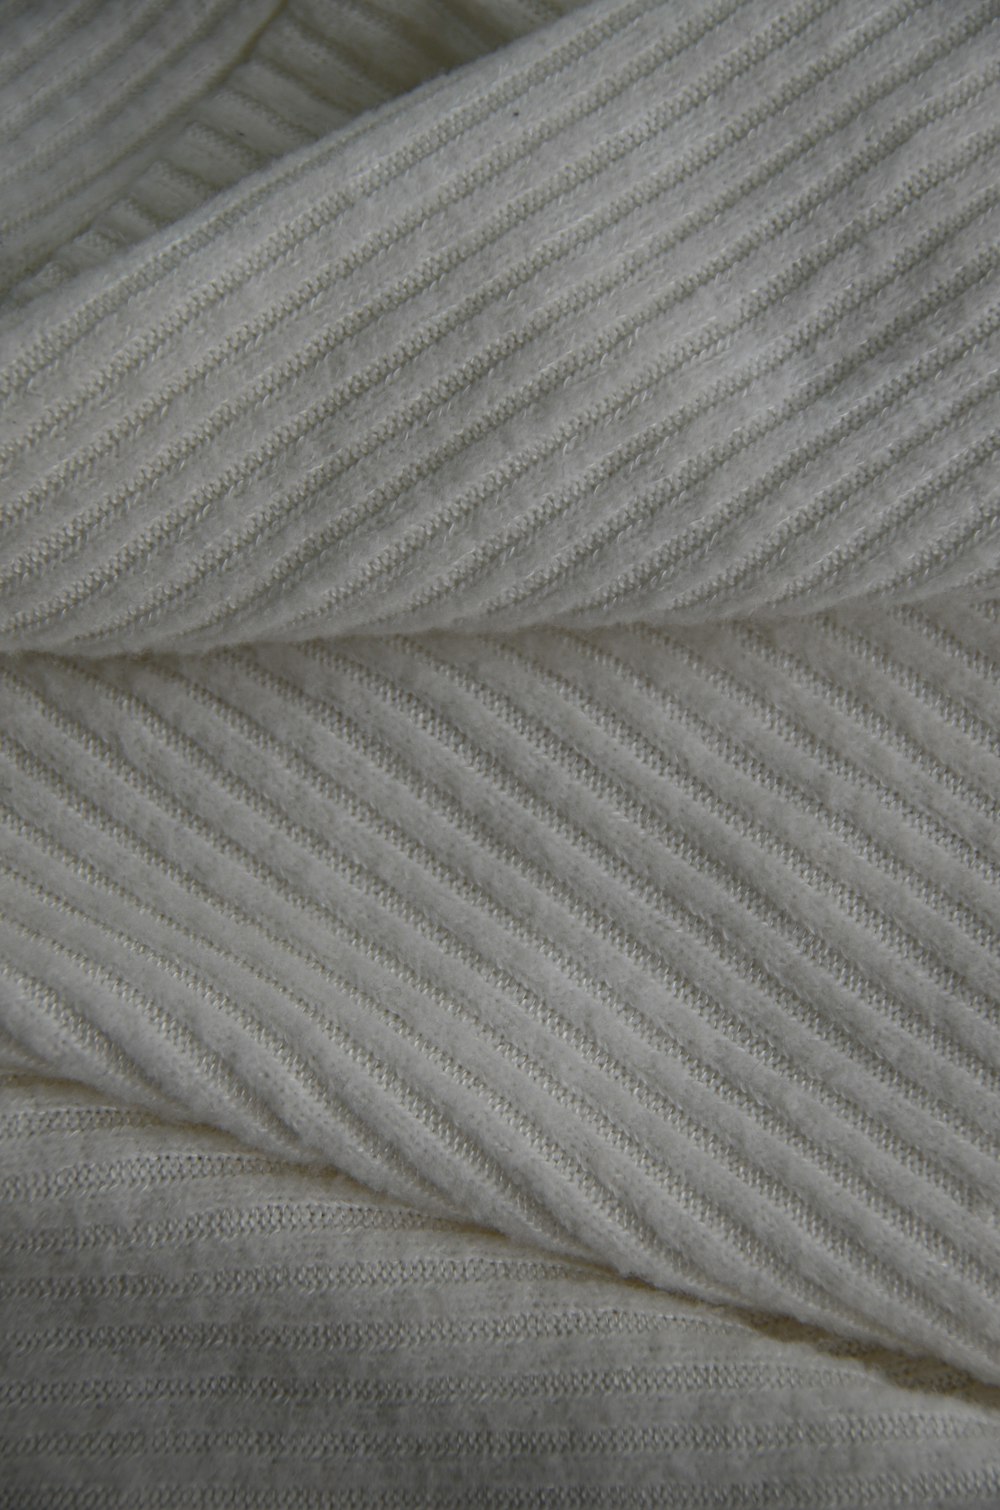 têxtil listrado branco e cinza